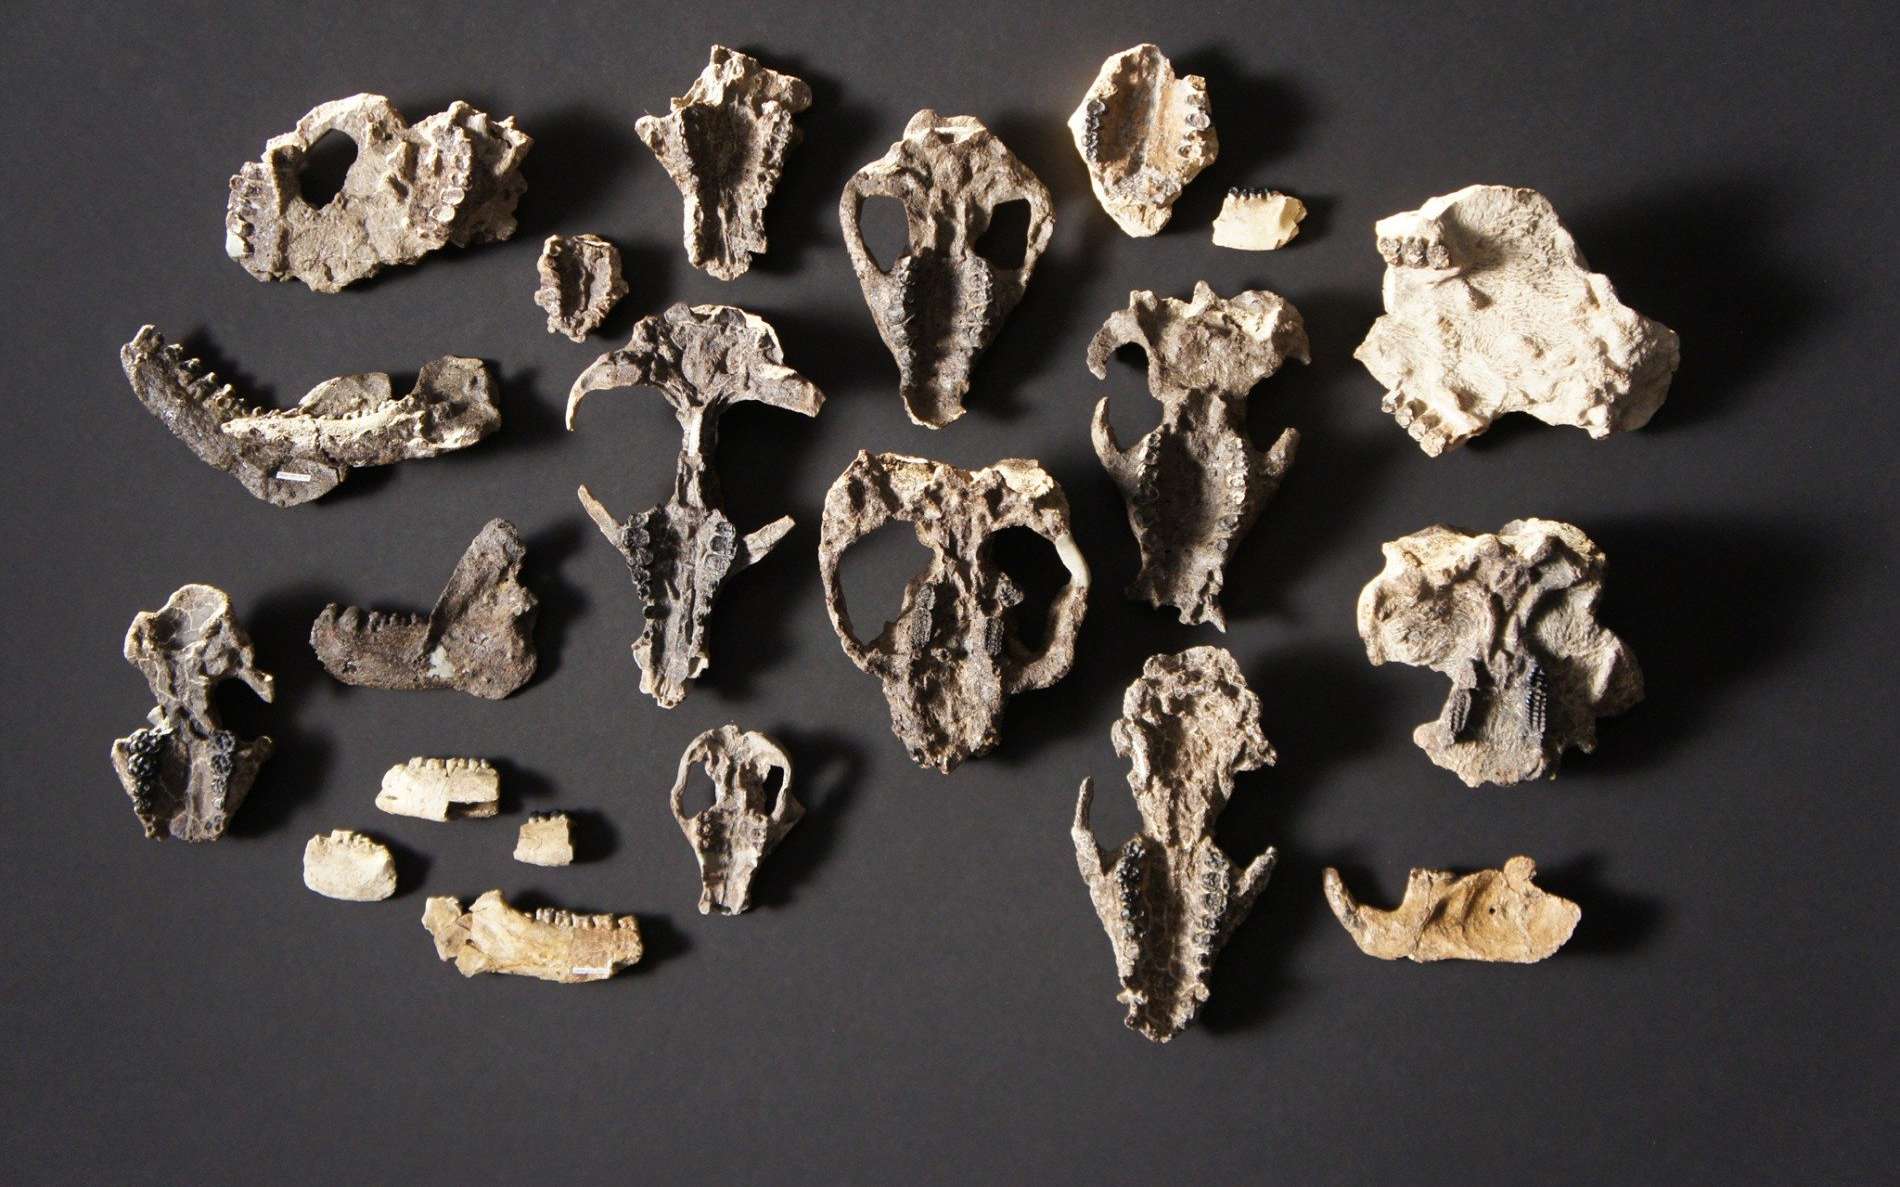 Une collection de fossiles de mammifères. © HHMI Tangled Bank Studios